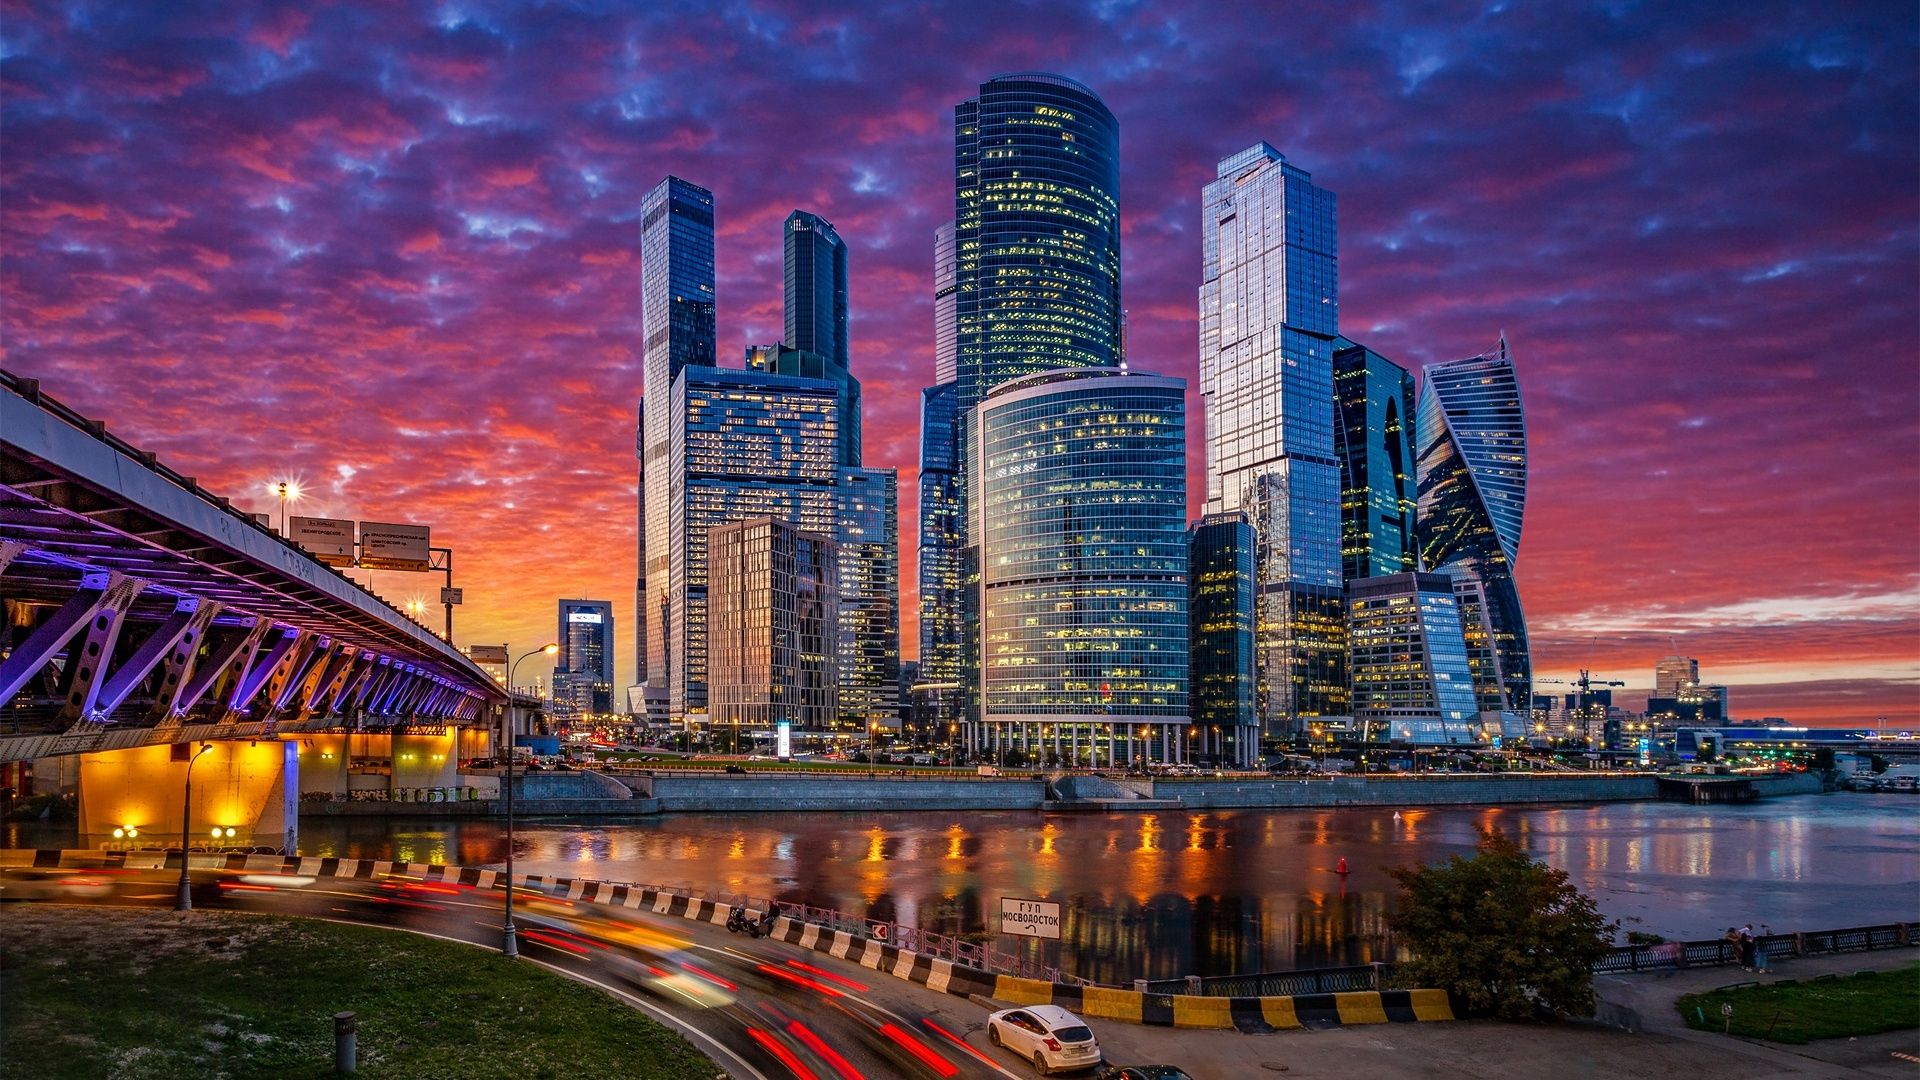 Moscow City At Night Wallpaper, HD City 4K Wallpaper, Image